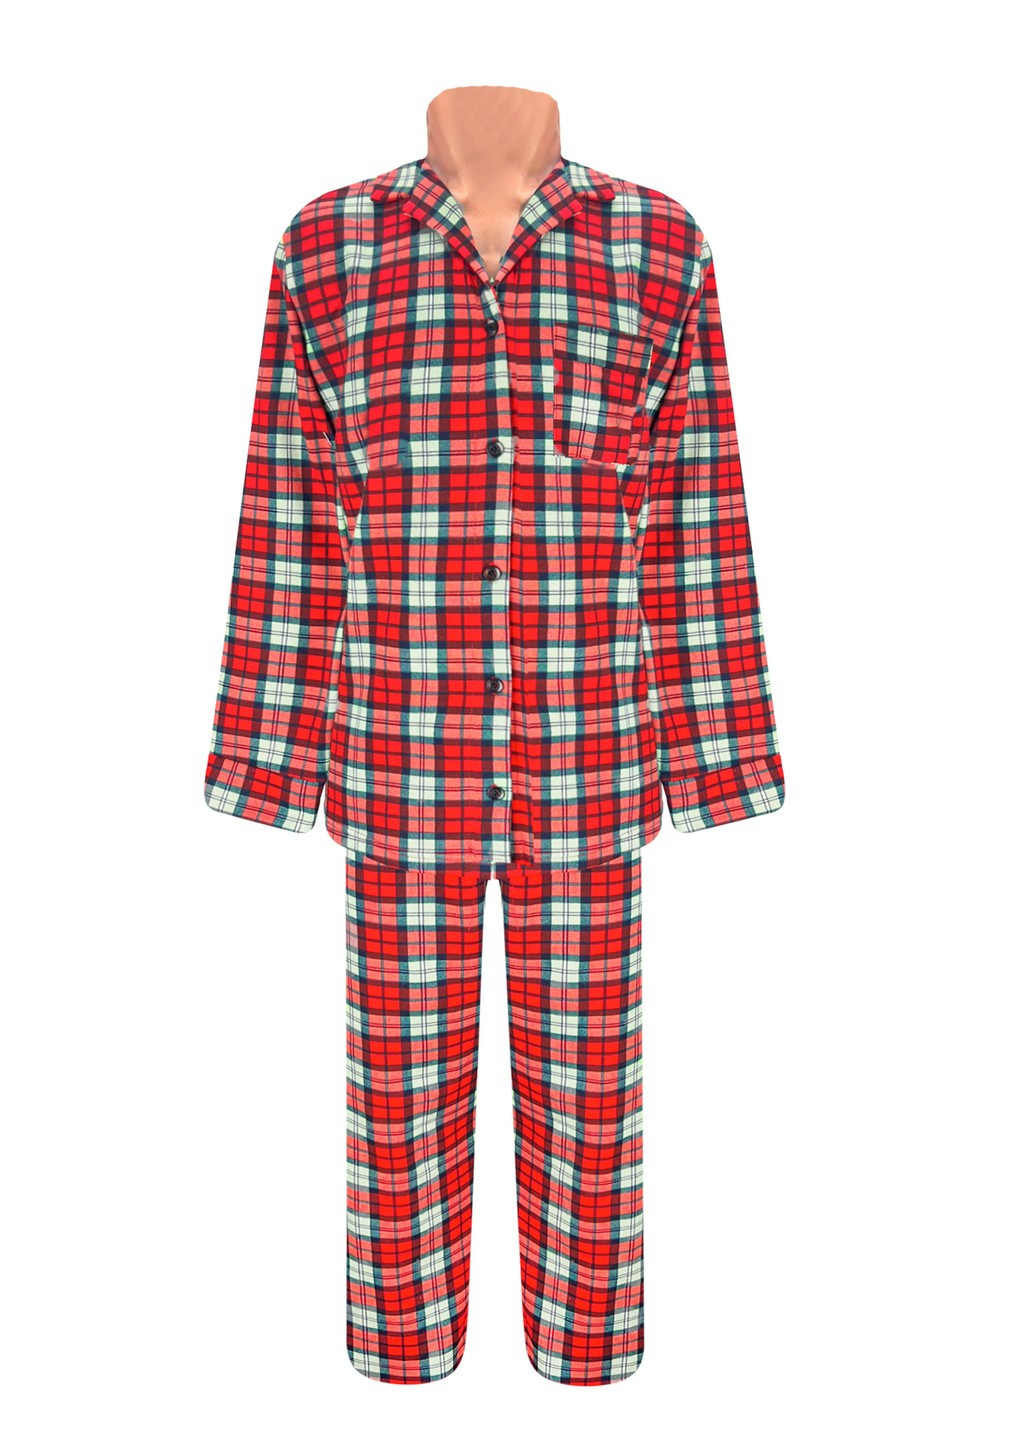 Красная всесезон пижама на пуговицах клетка начёс рубашка + брюки Жемчужина стилей 1323